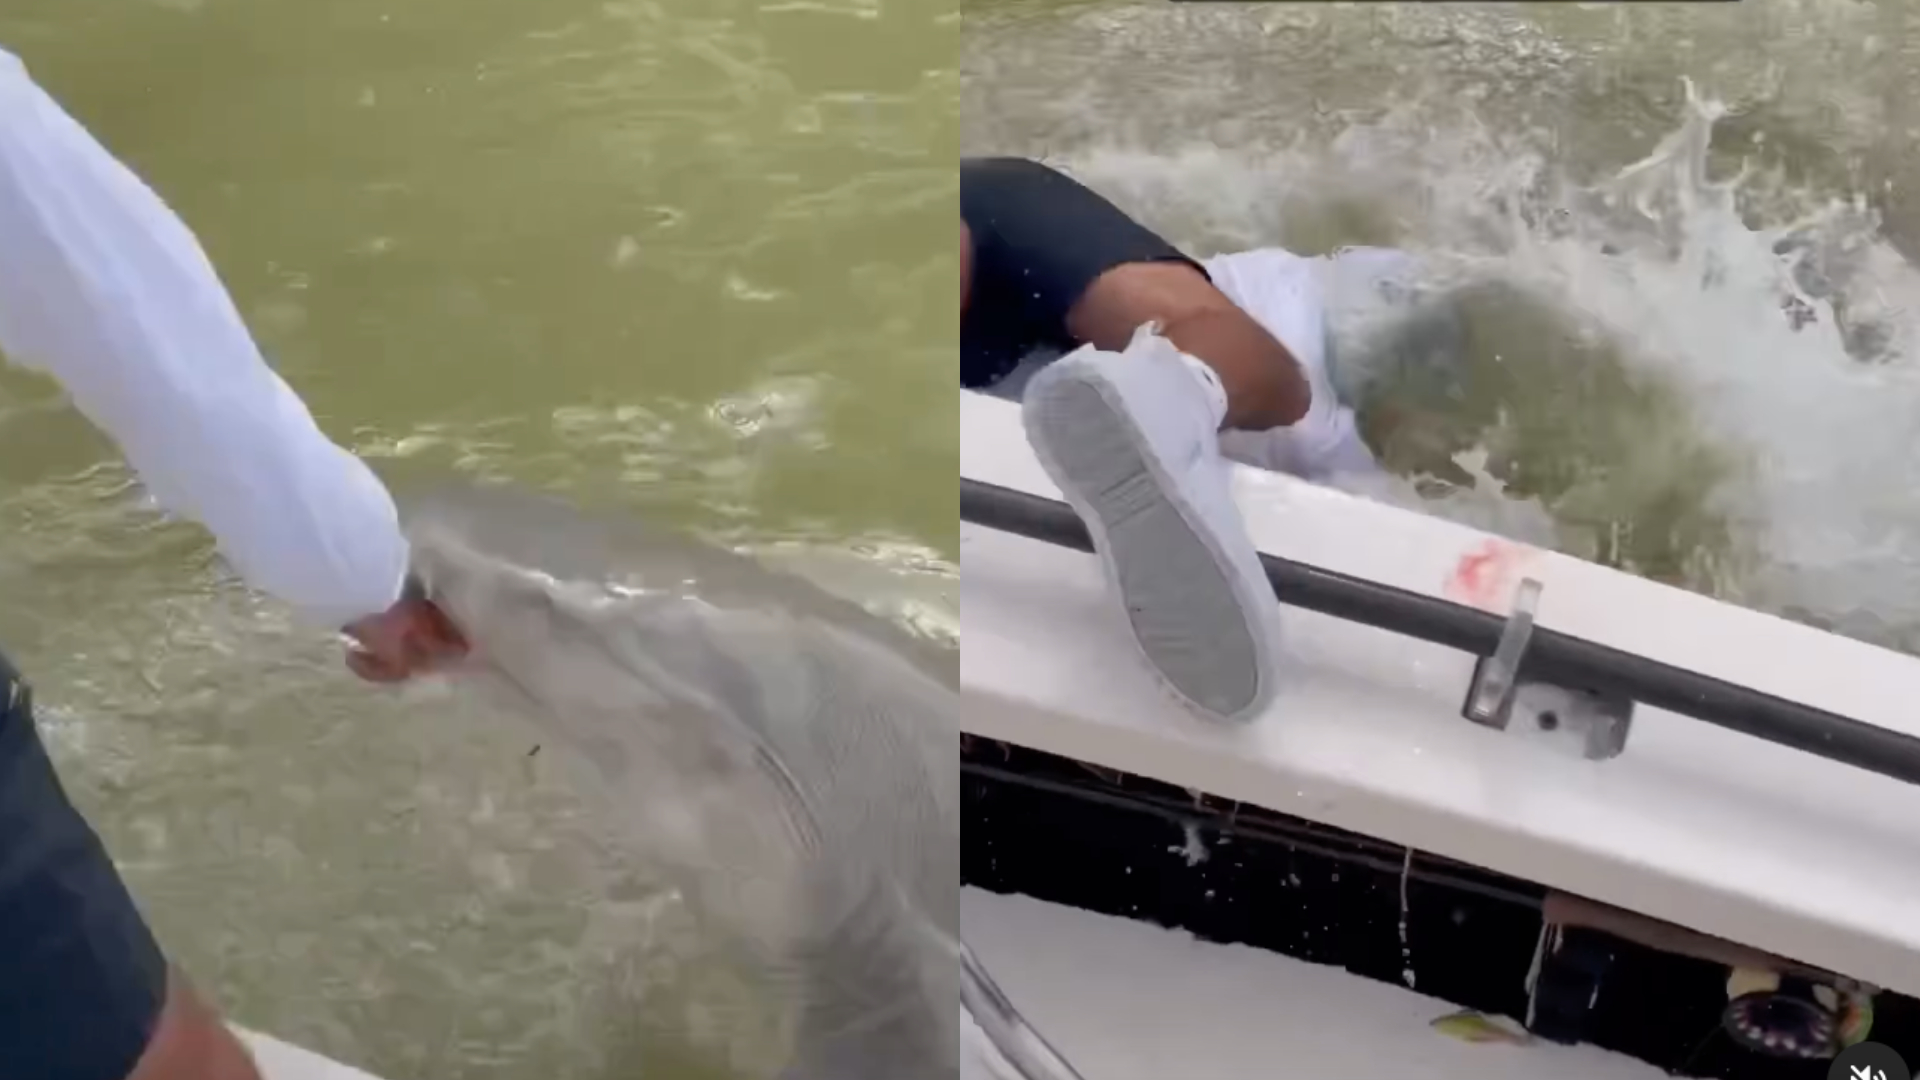 Pescador coloca mão na água e é surpreendido ao ser puxado para fora do barco por tubarão; assista